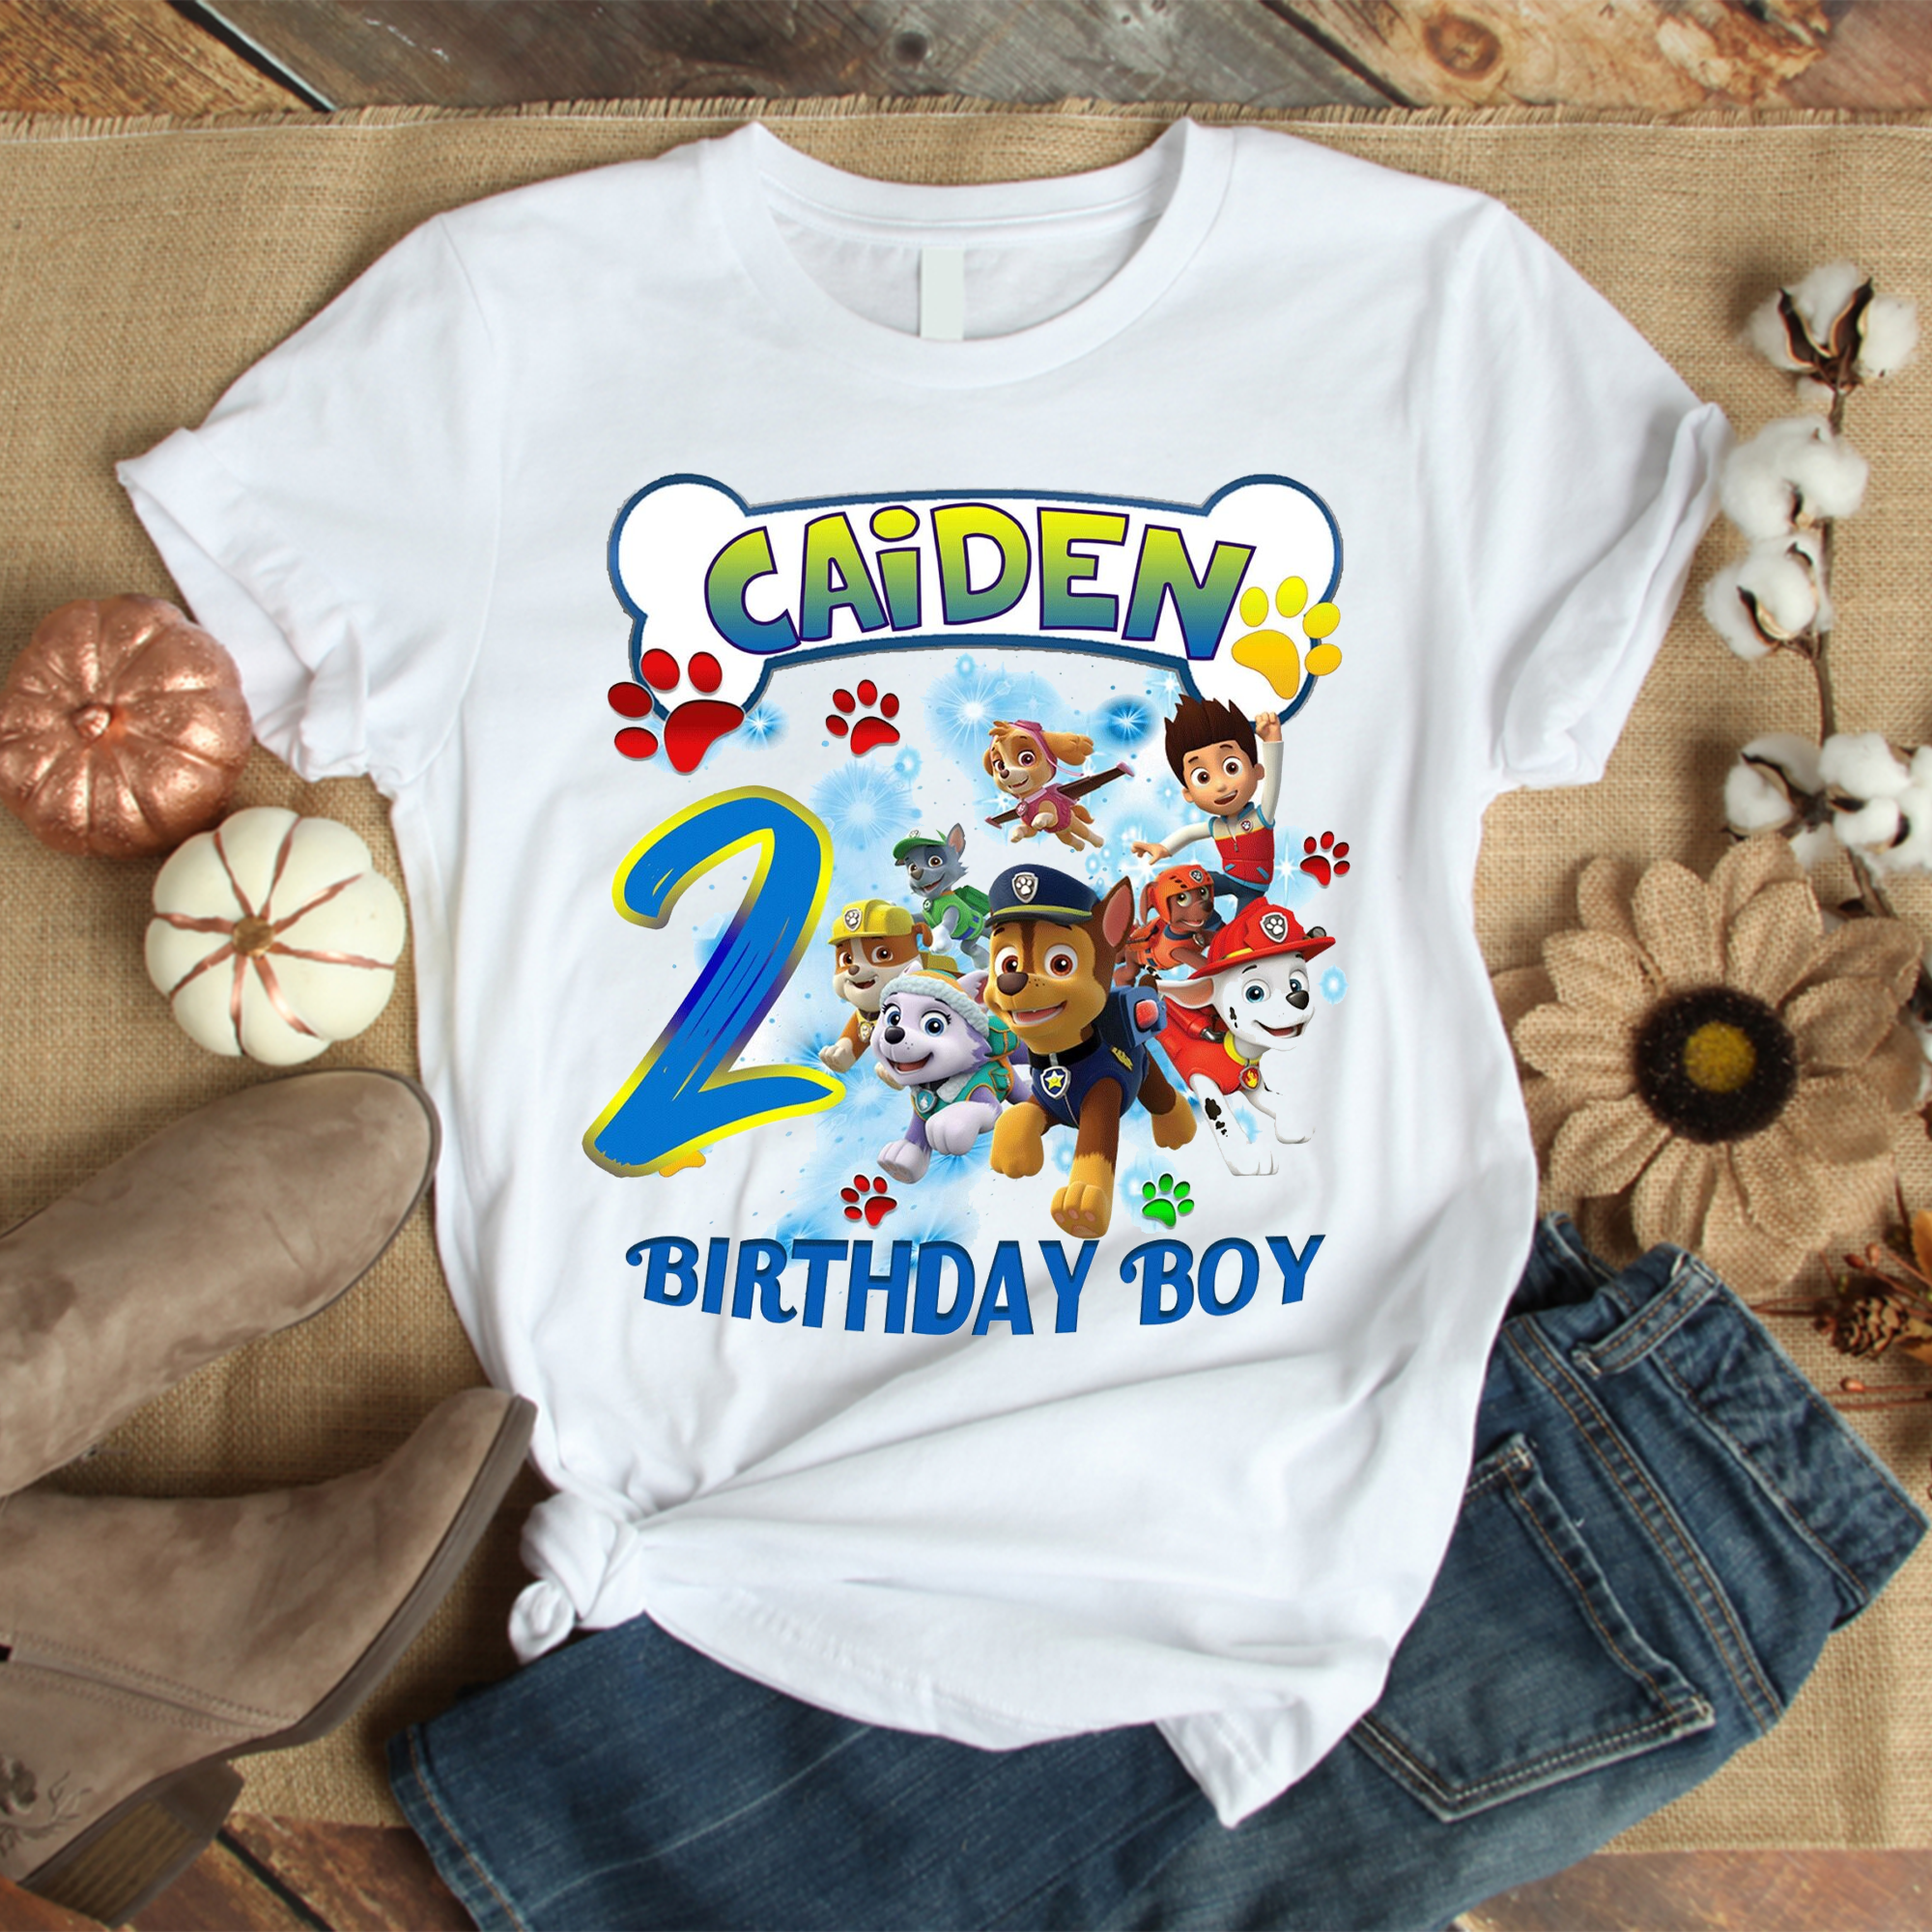 Personalized Paw Patrol Birthday Shirt, Personalized Birthday Family Shirts, Custom Birthday Paw Patrol Tshirt Set